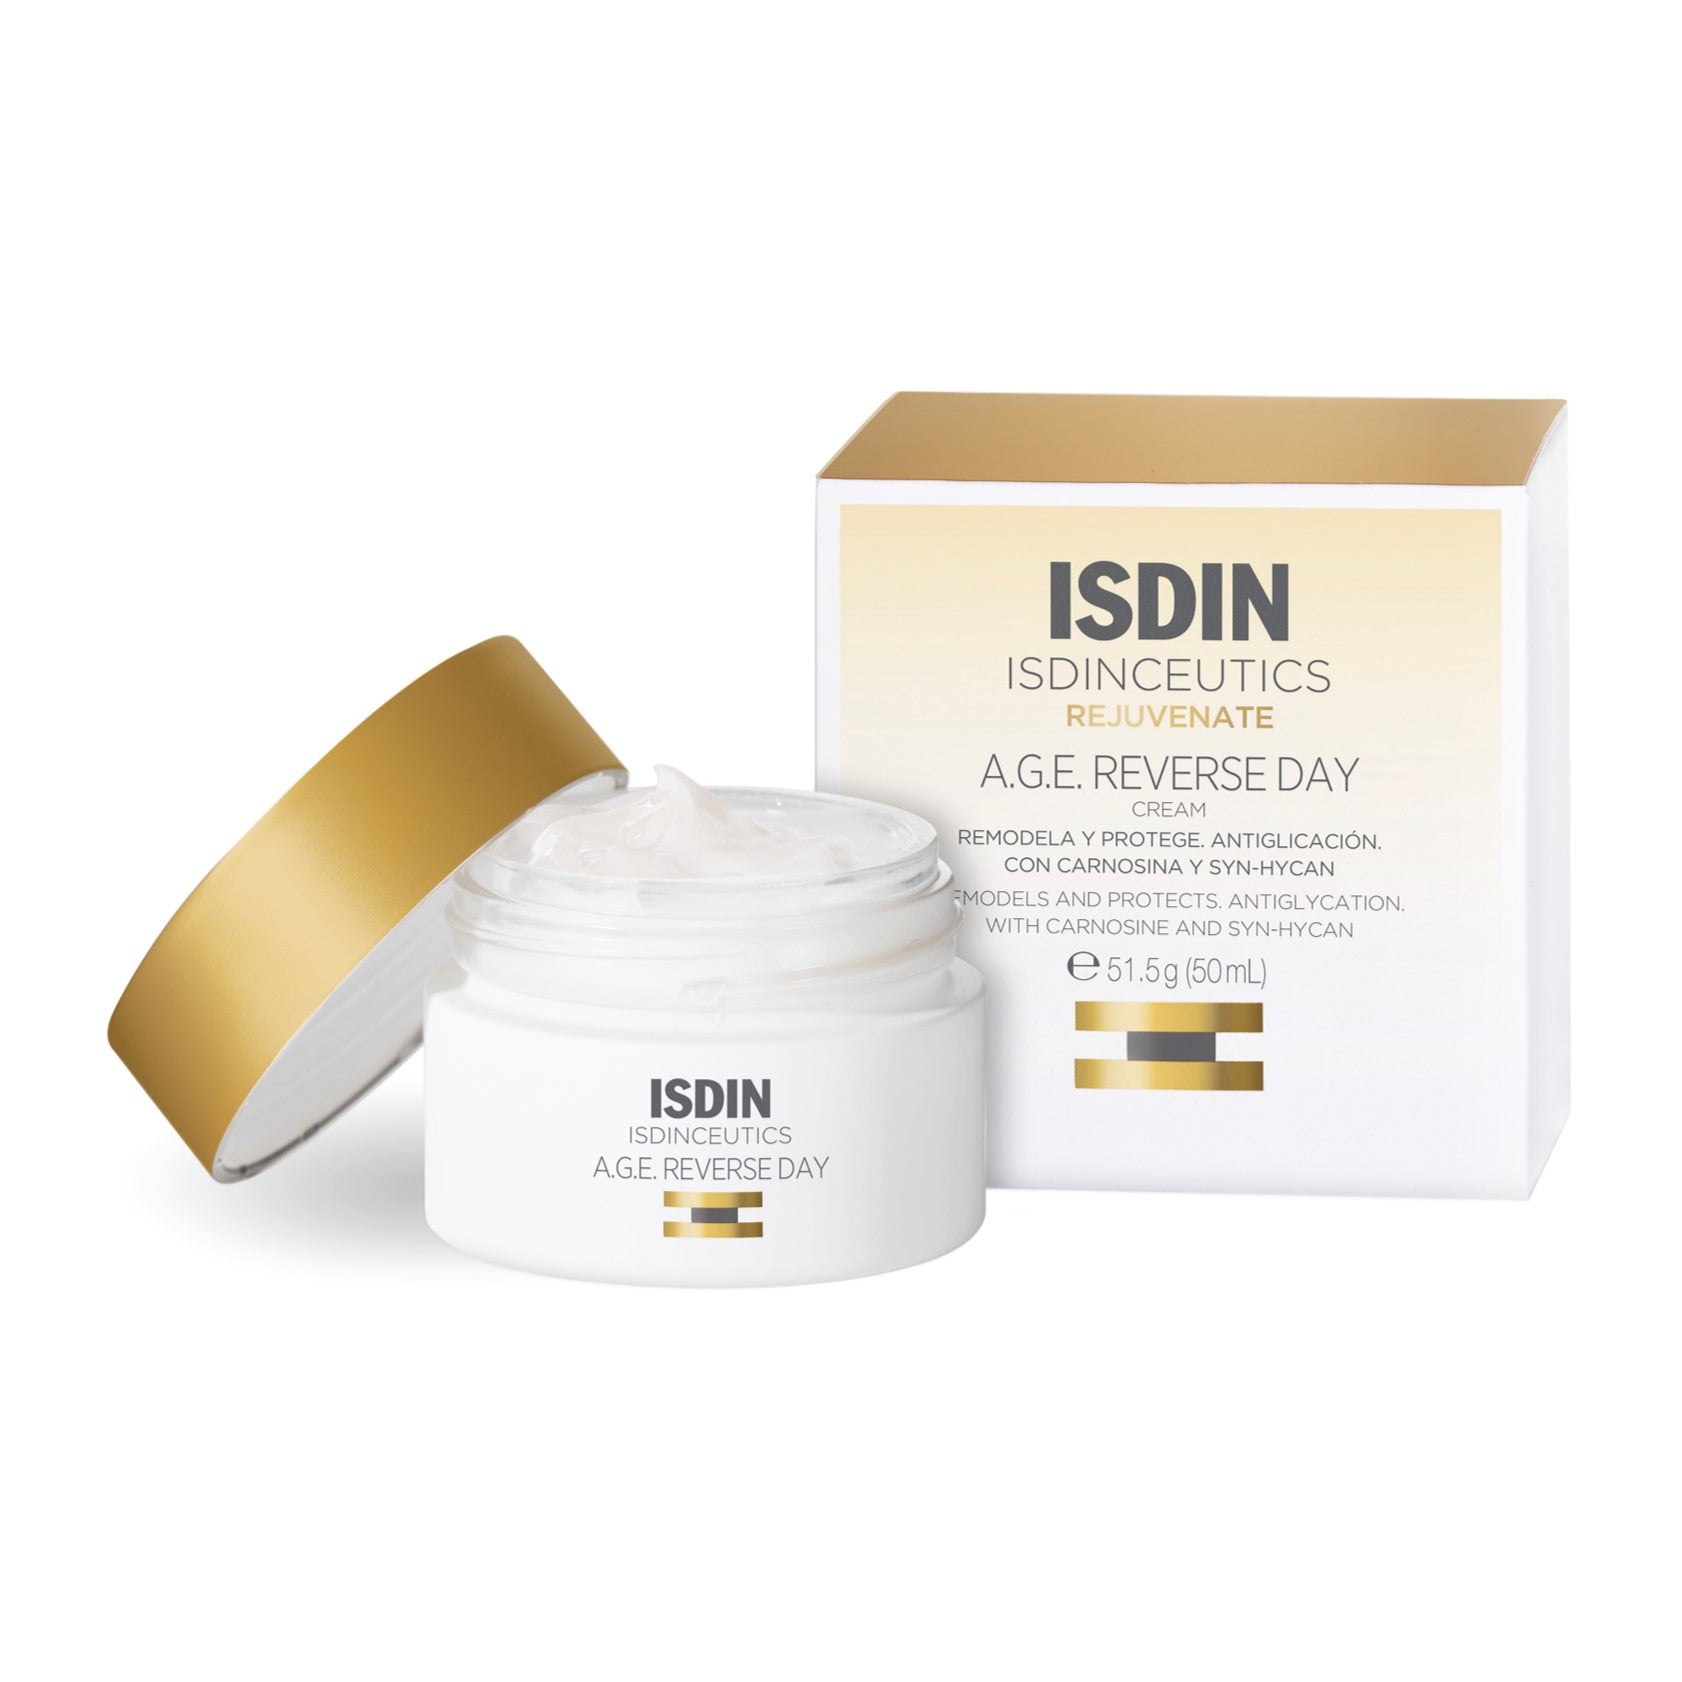 ISDINceutics A.G.E. Reverse Day Cream 50ml